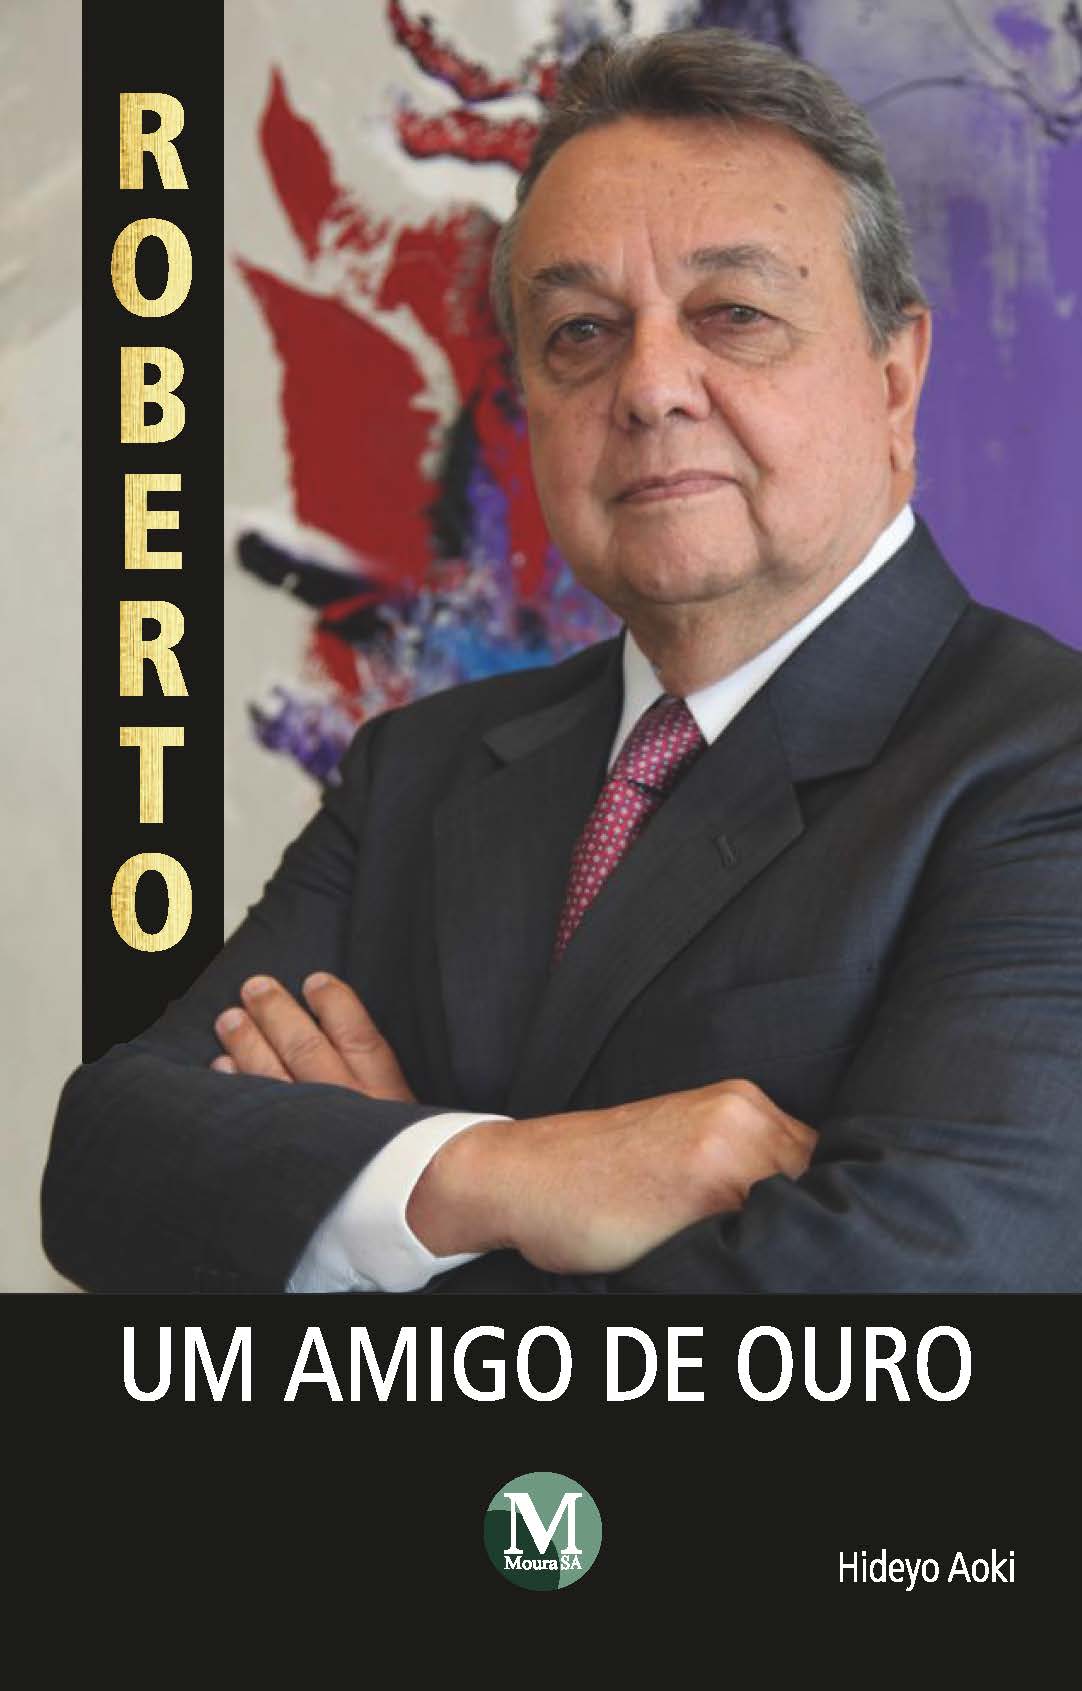 Capa do livro: ROBERTO, UM AMIGO DE OURO